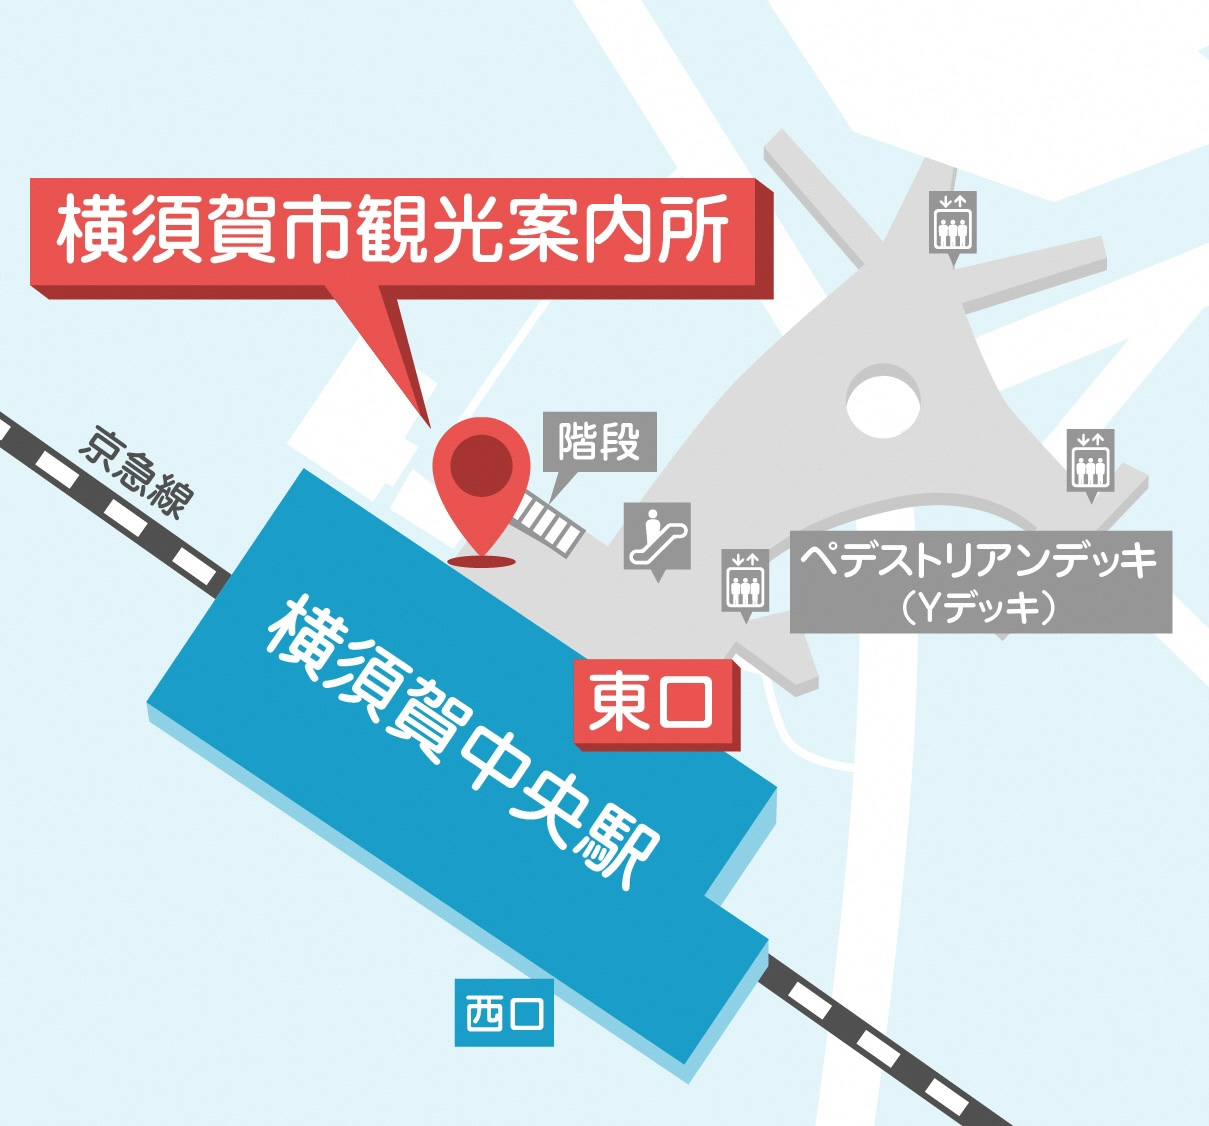 横須賀中央駅から横須賀市観光案内所までのマップ